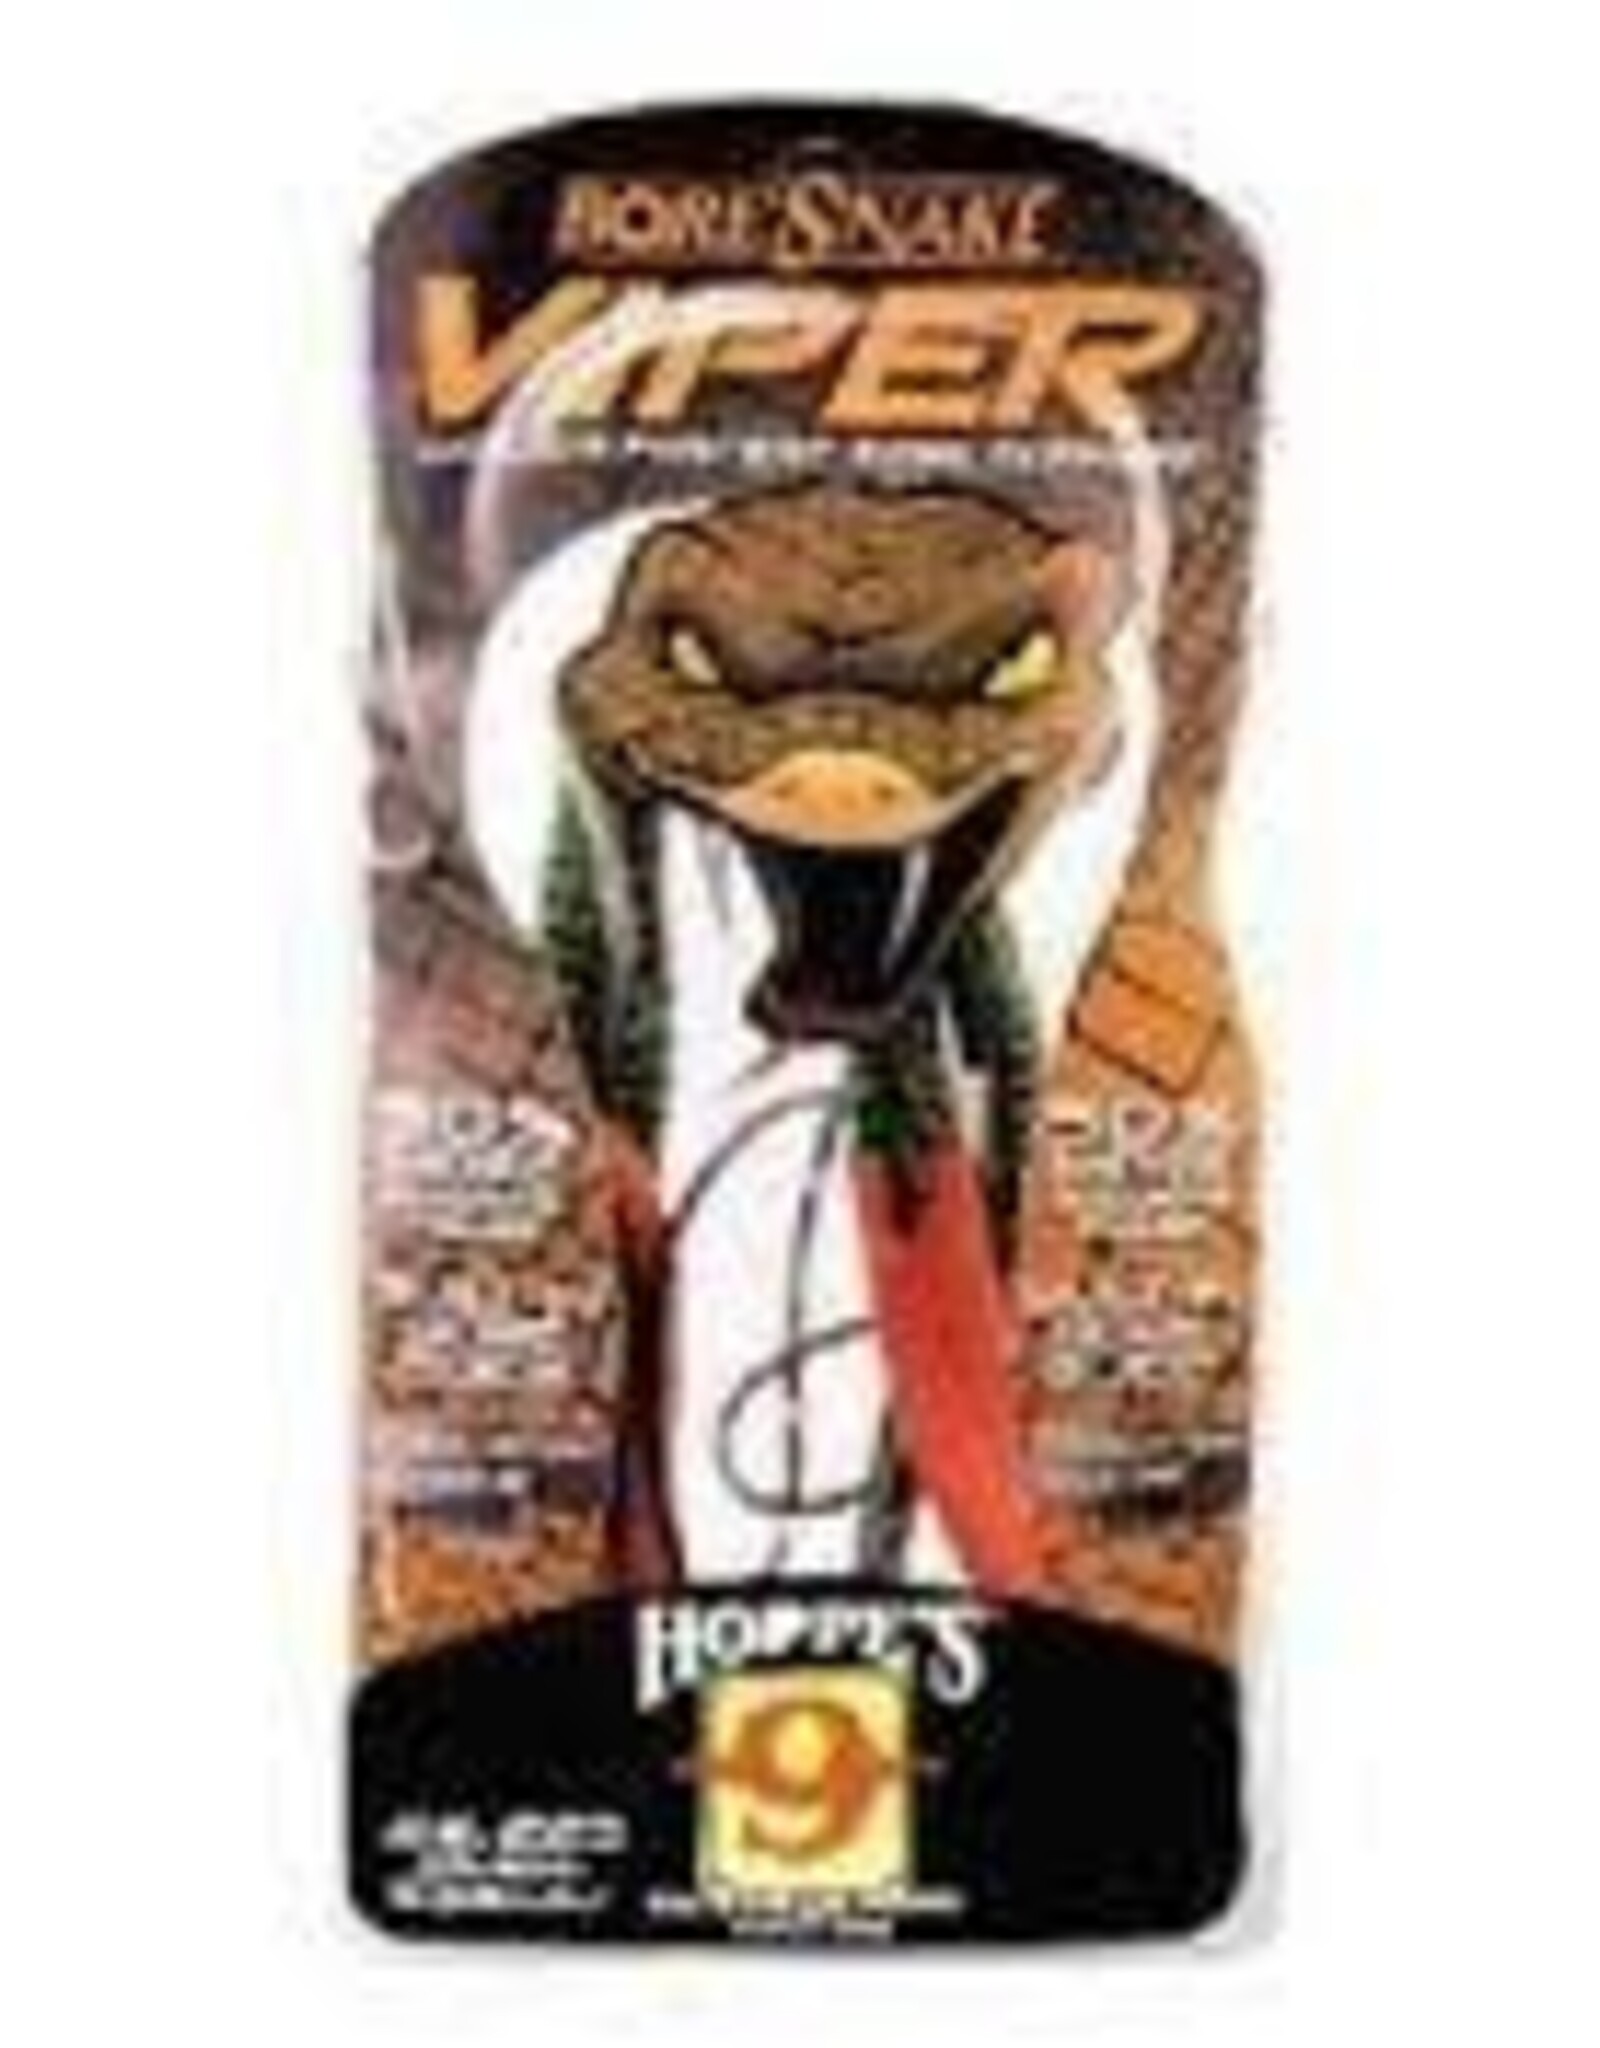 Hoppe’s Viper Bore Snake Cleaner